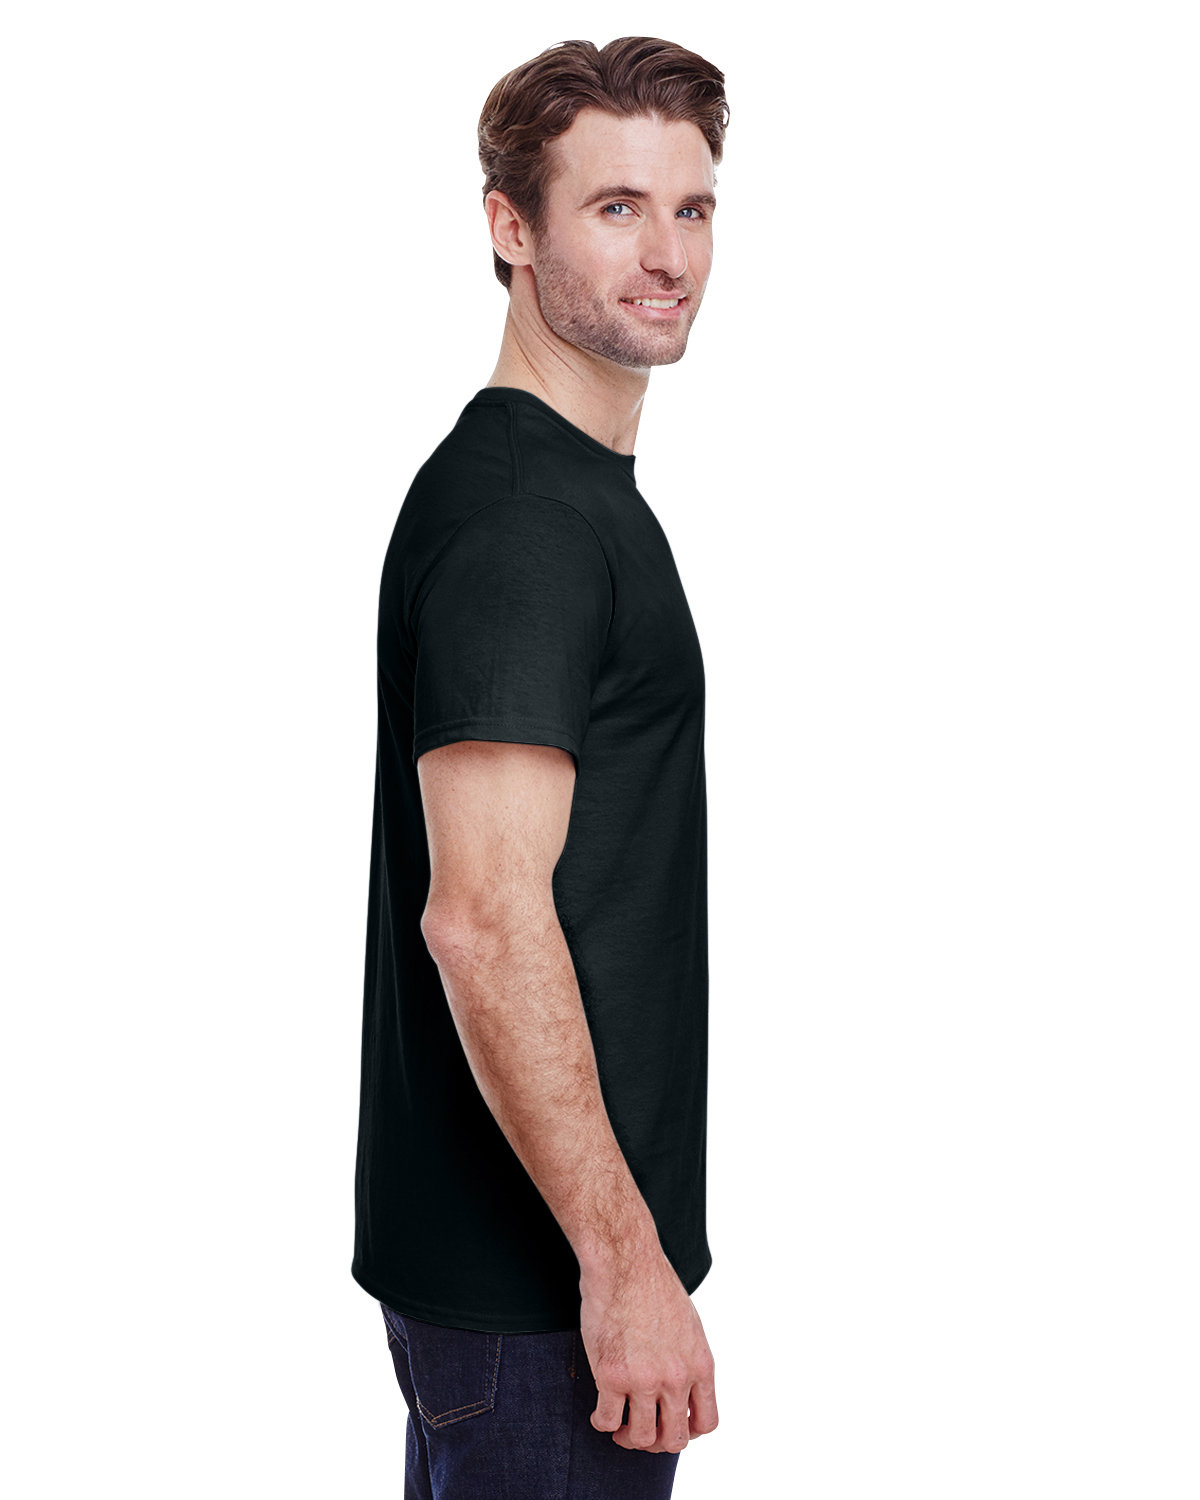 G500 Unisex 5.3 oz T-Shirt - Gildan - CustomCat